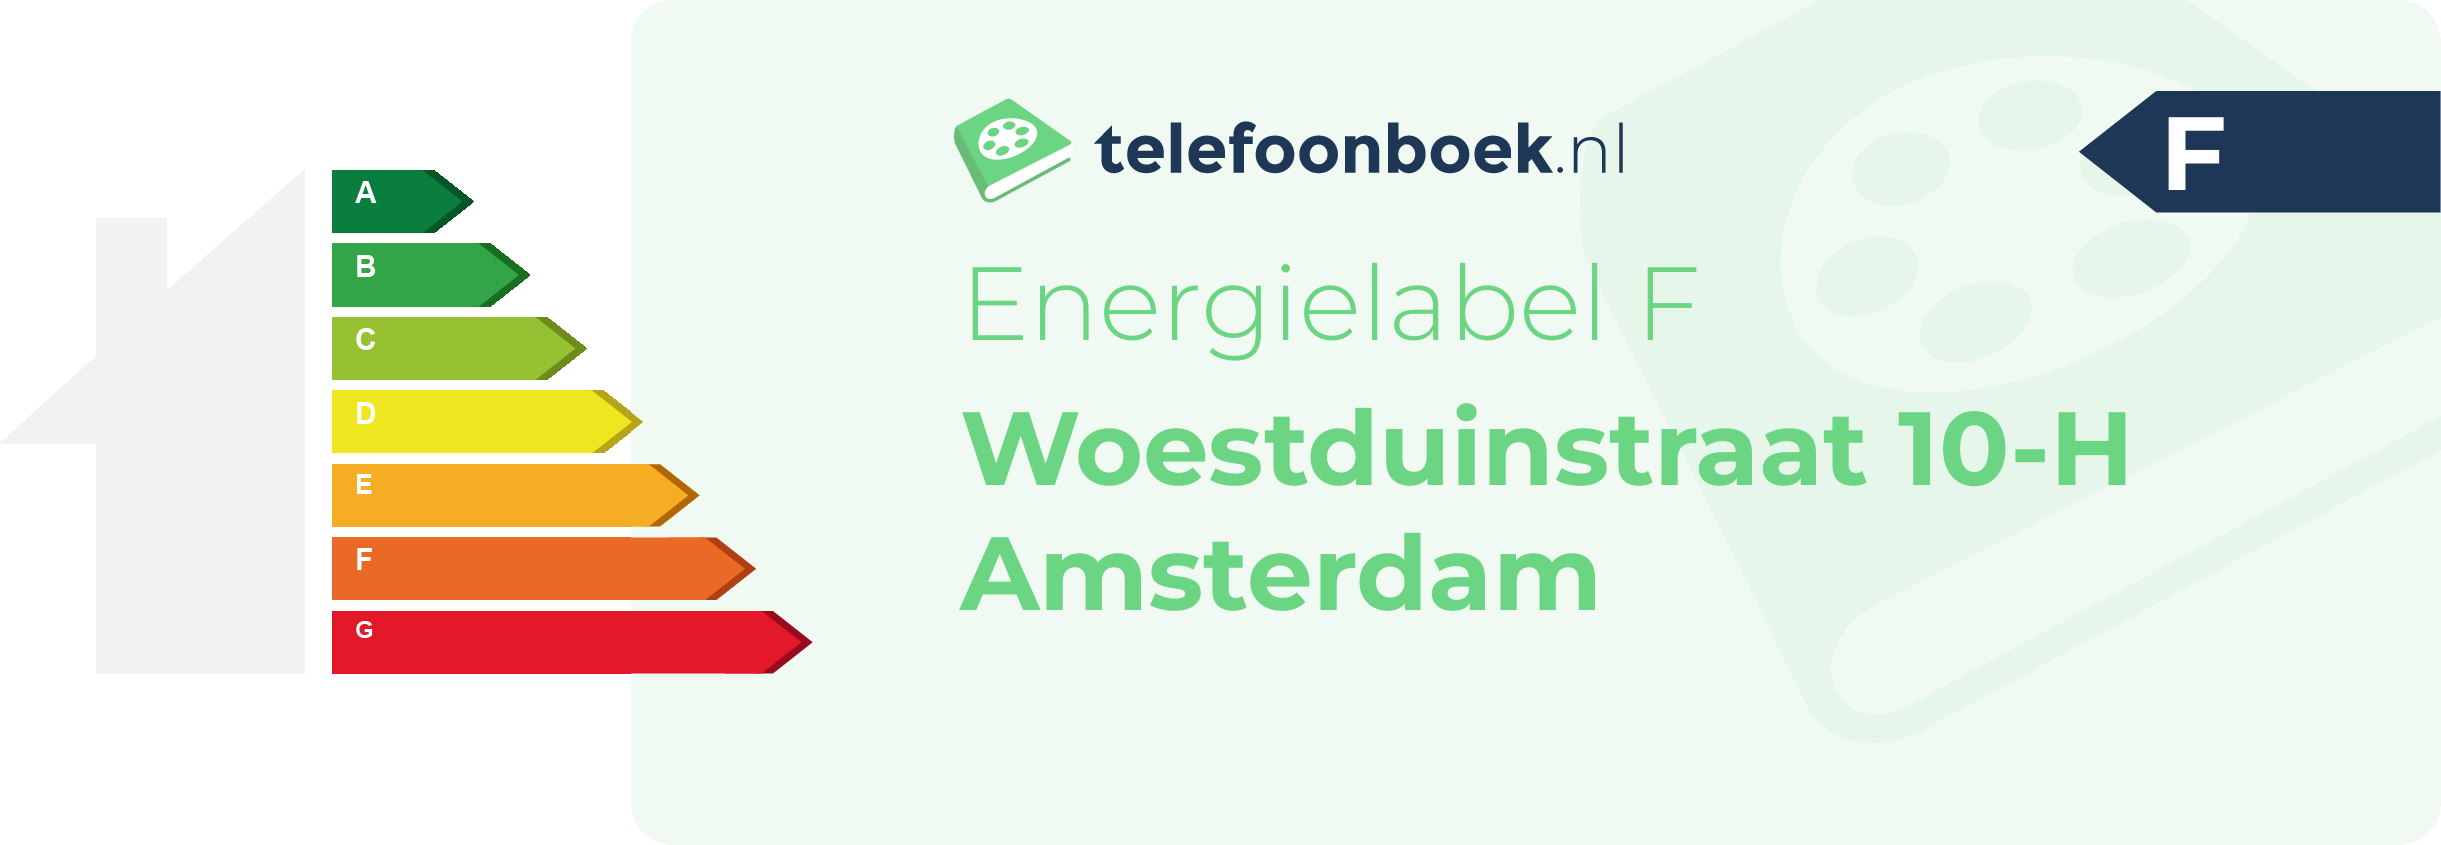 Energielabel Woestduinstraat 10-H Amsterdam